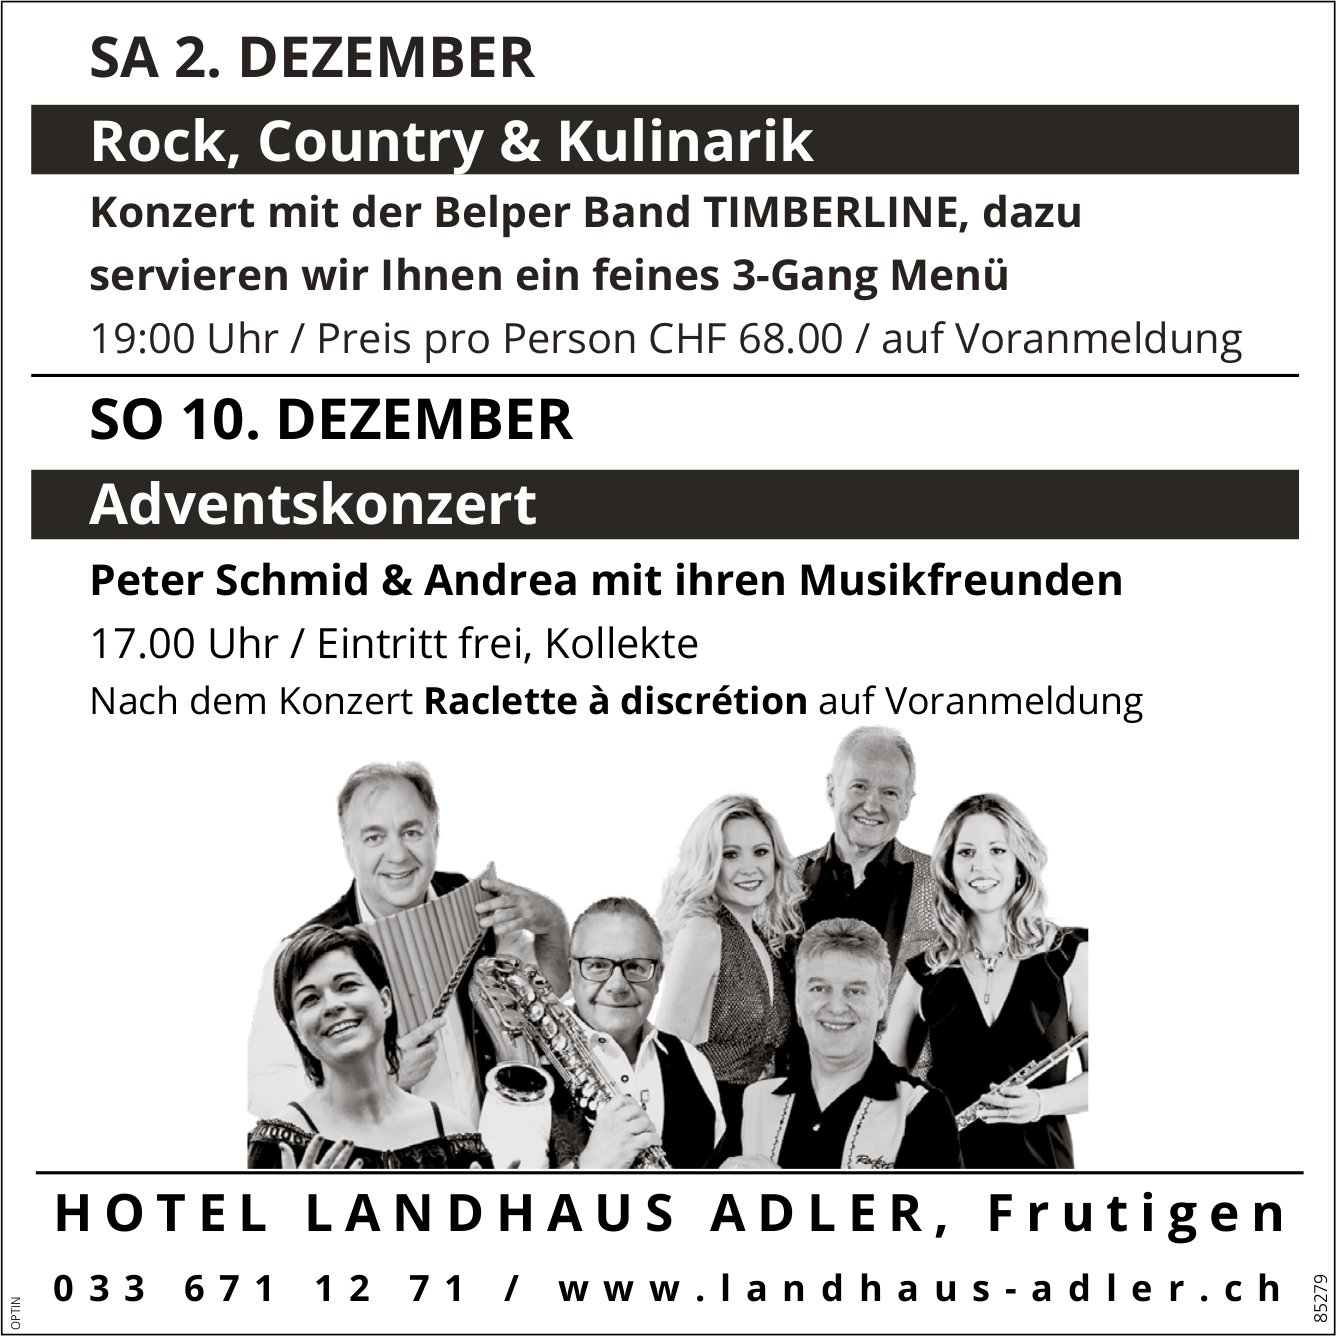 Rock, Country & Kulinarik und Adventskonzert, 2. und 10. Dezember, Hotel Landhaus Adler, Frutigen